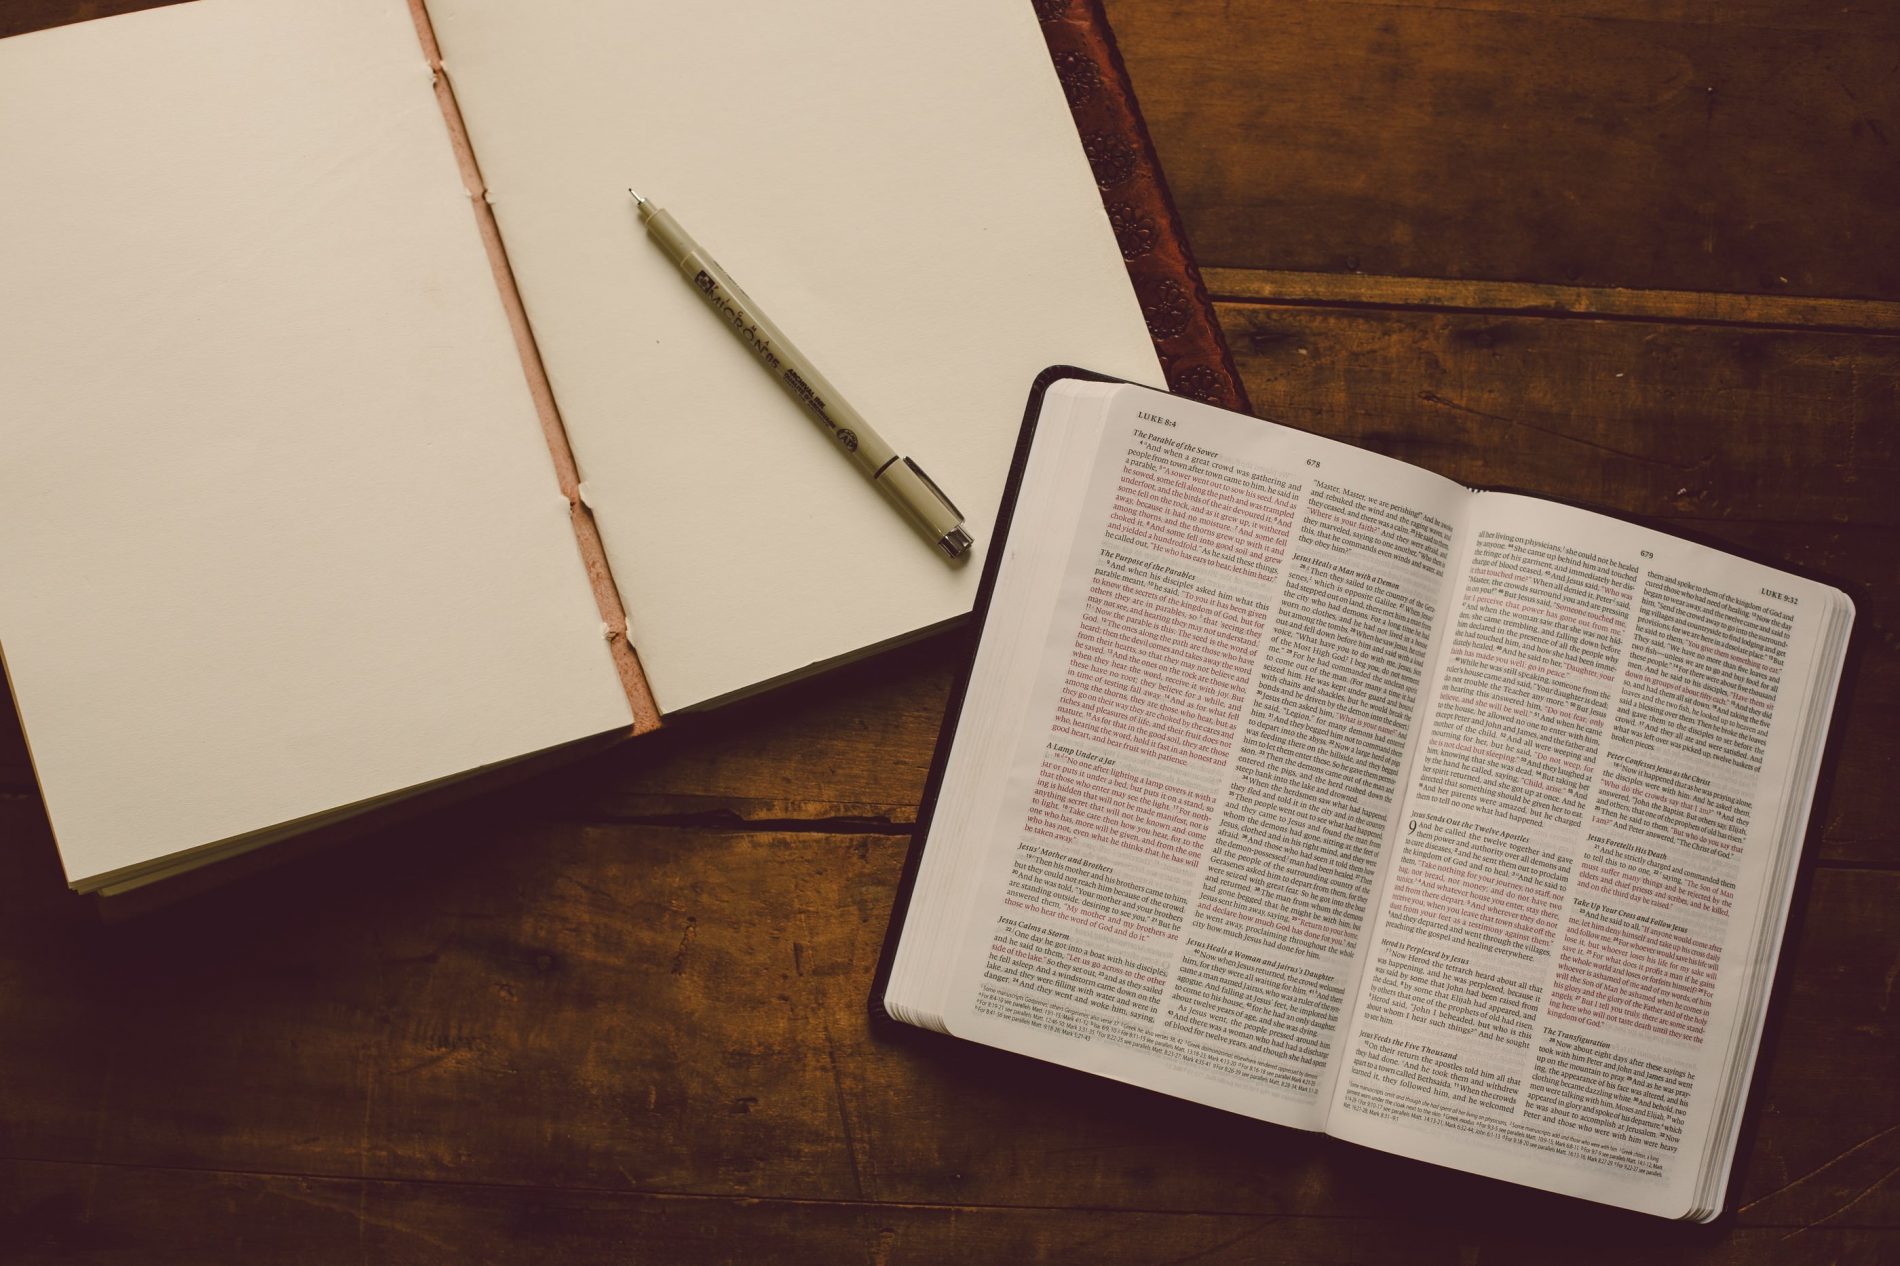 Como Começar a Estudar a Bíblia